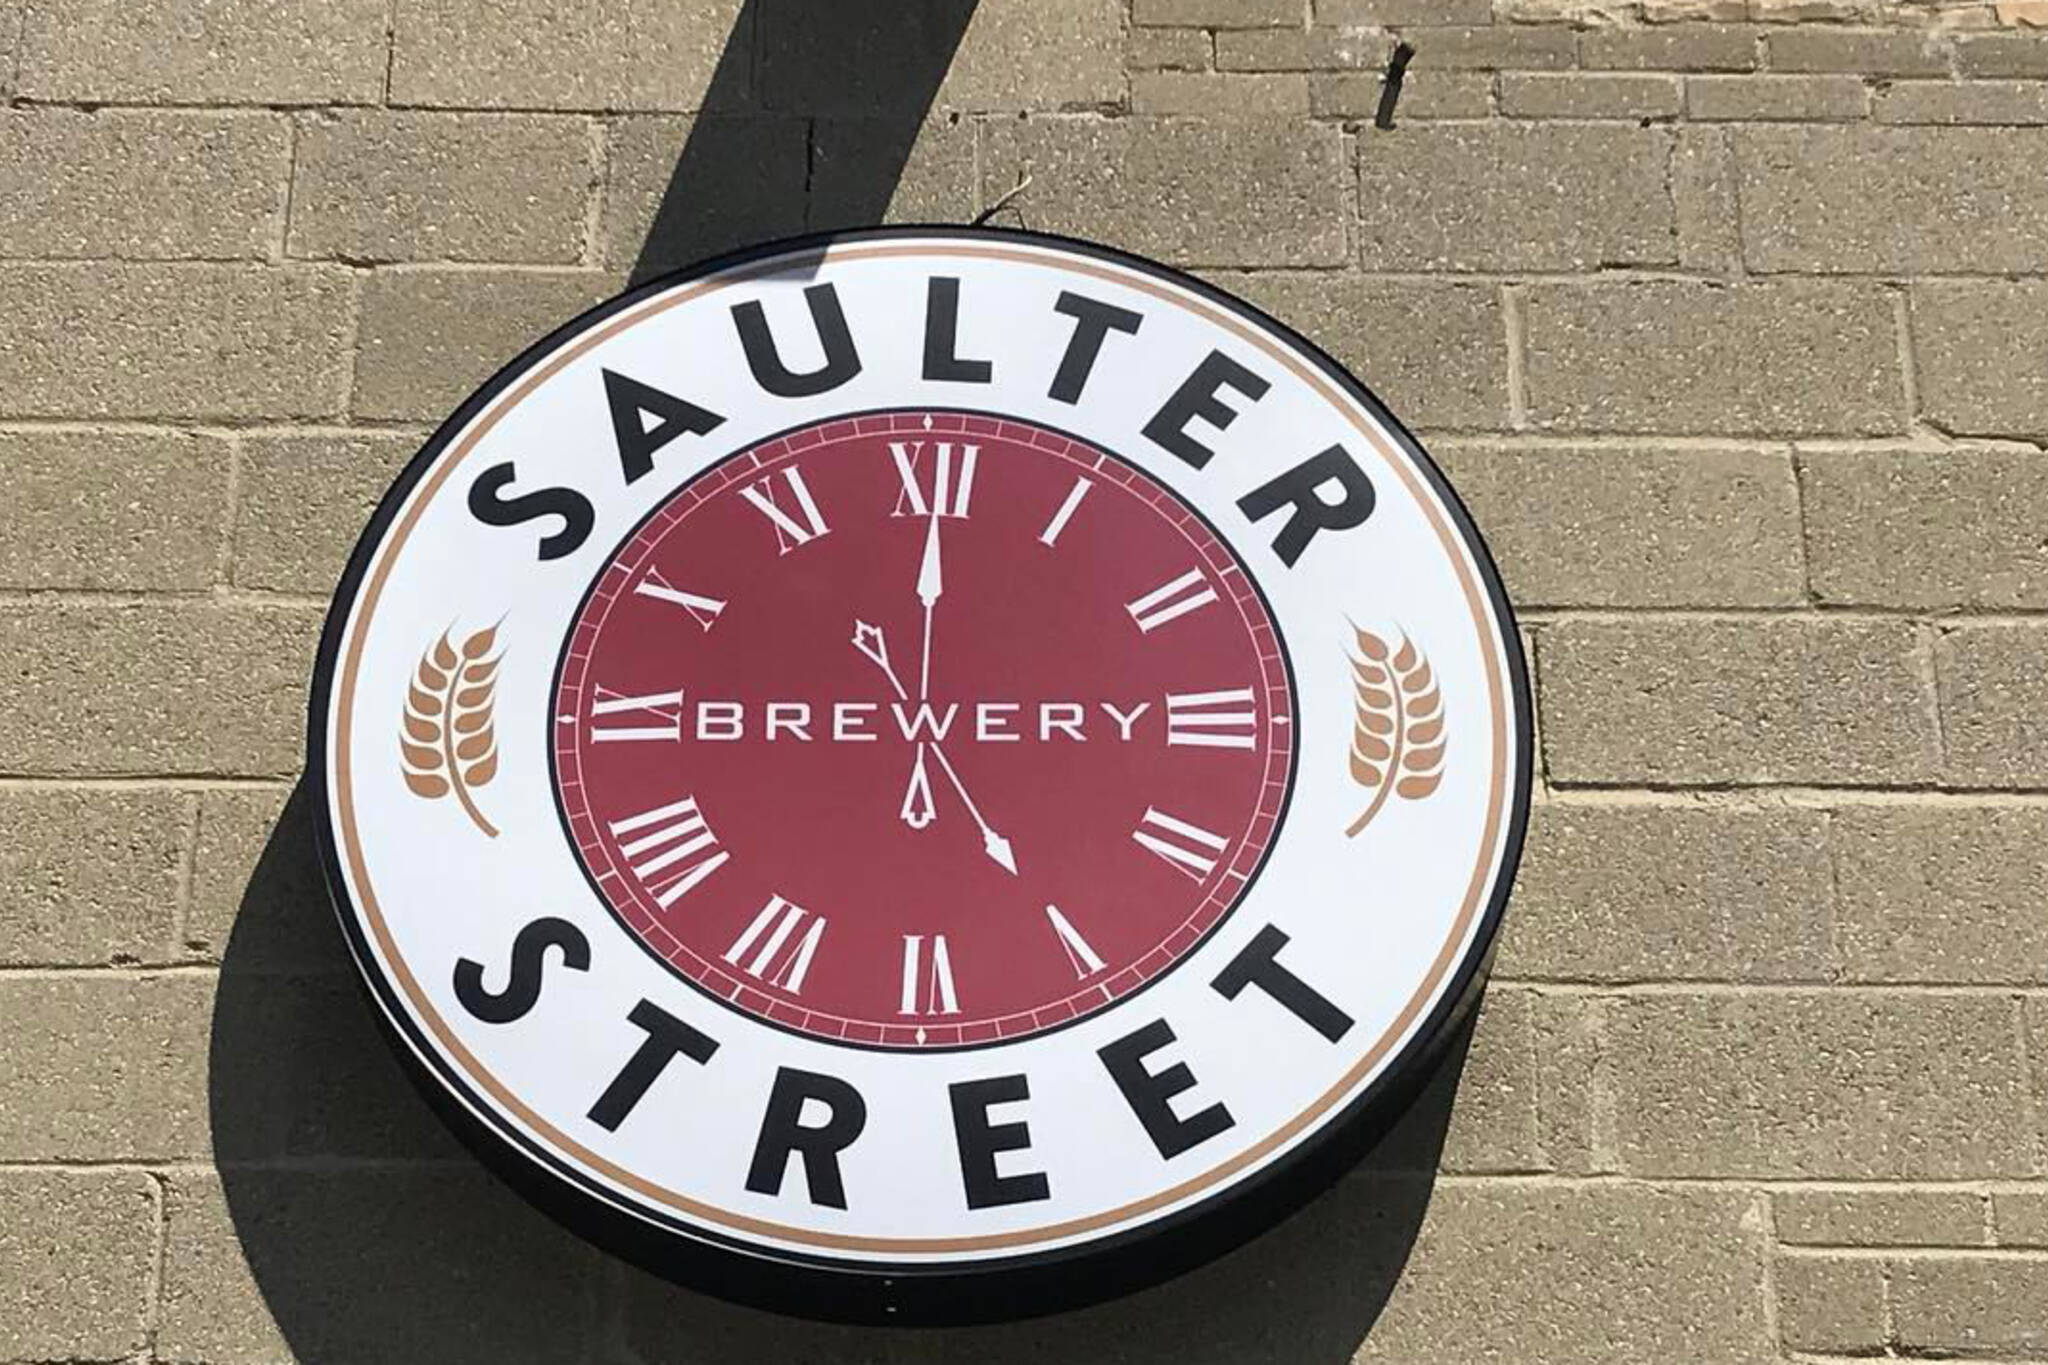 saulter brewery toronto